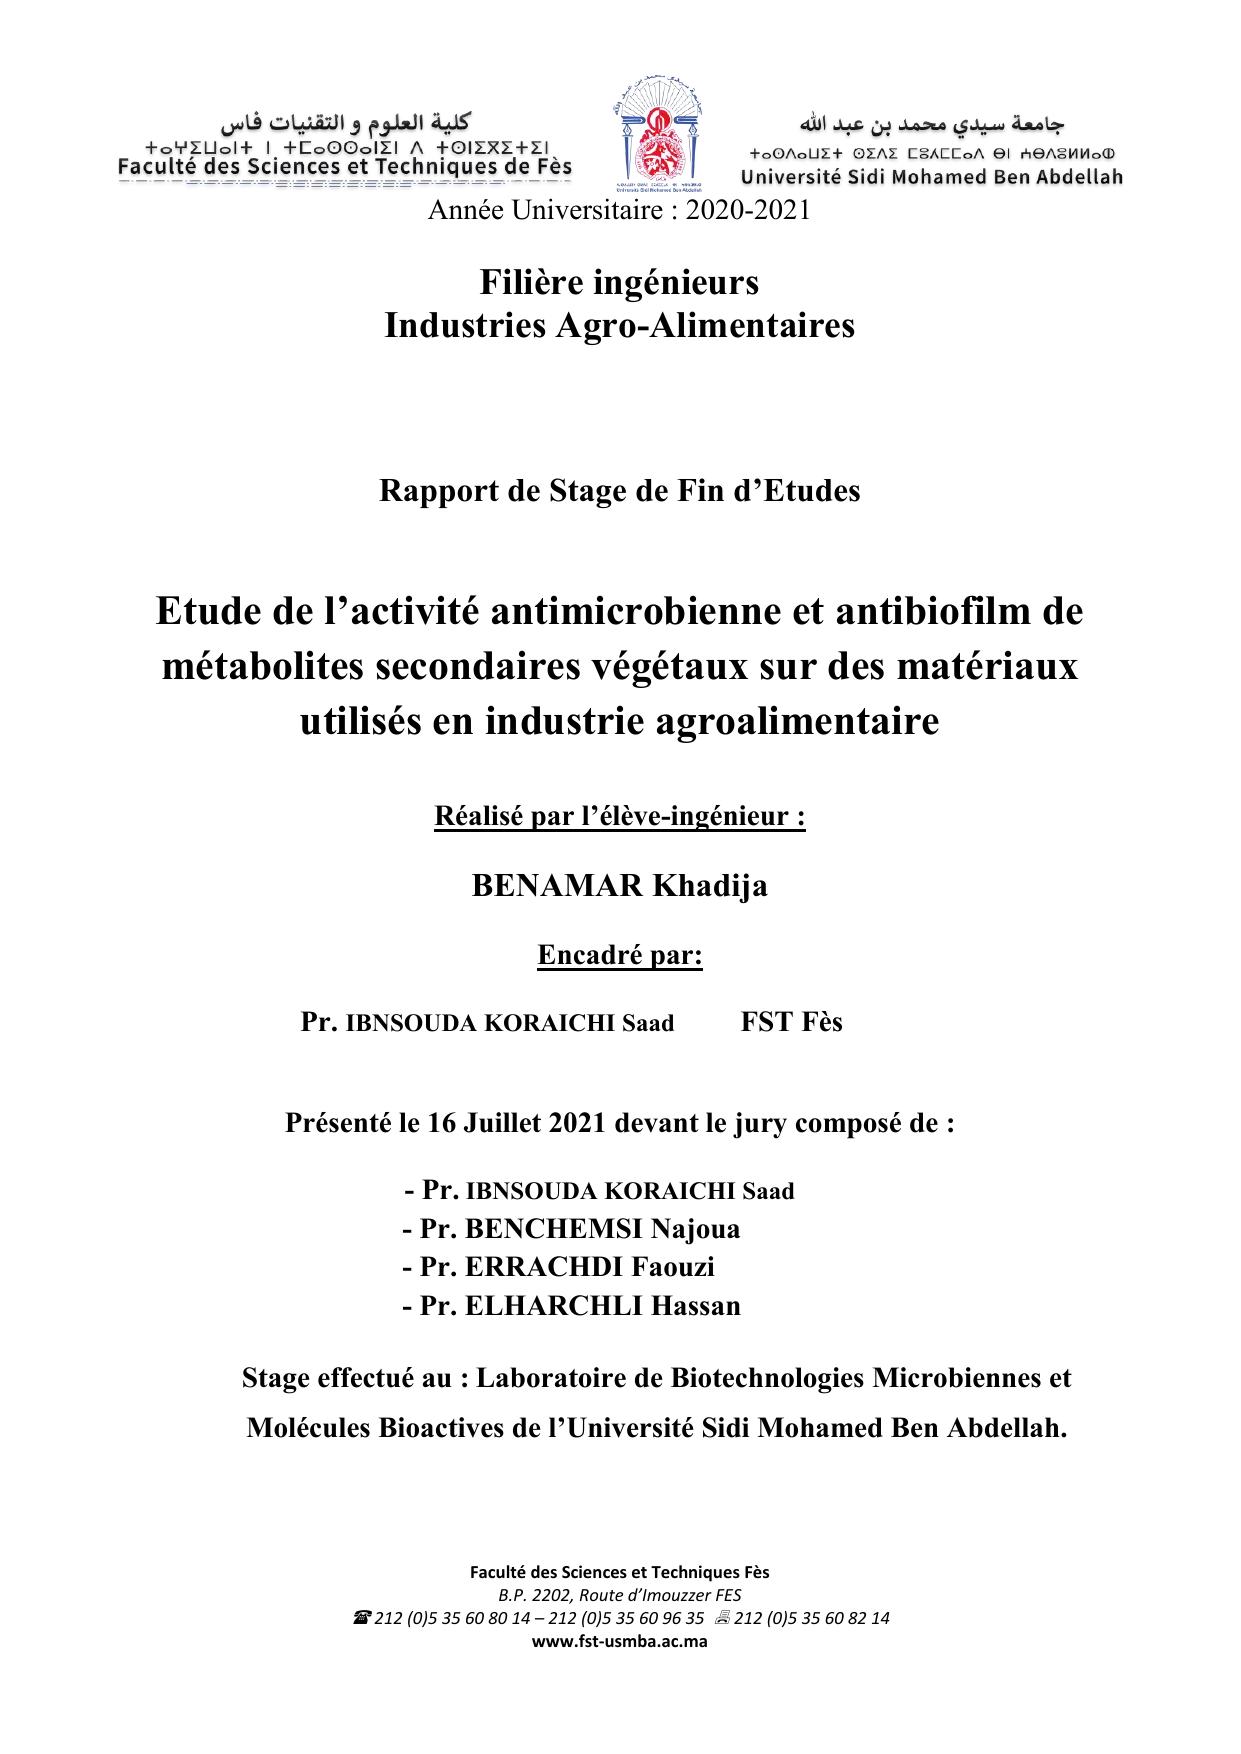 Etude de l’activité antimicrobienne et antibiofilm de métabolites secondaires végétaux sur des matériaux utilisés en industrie agroalimentaire